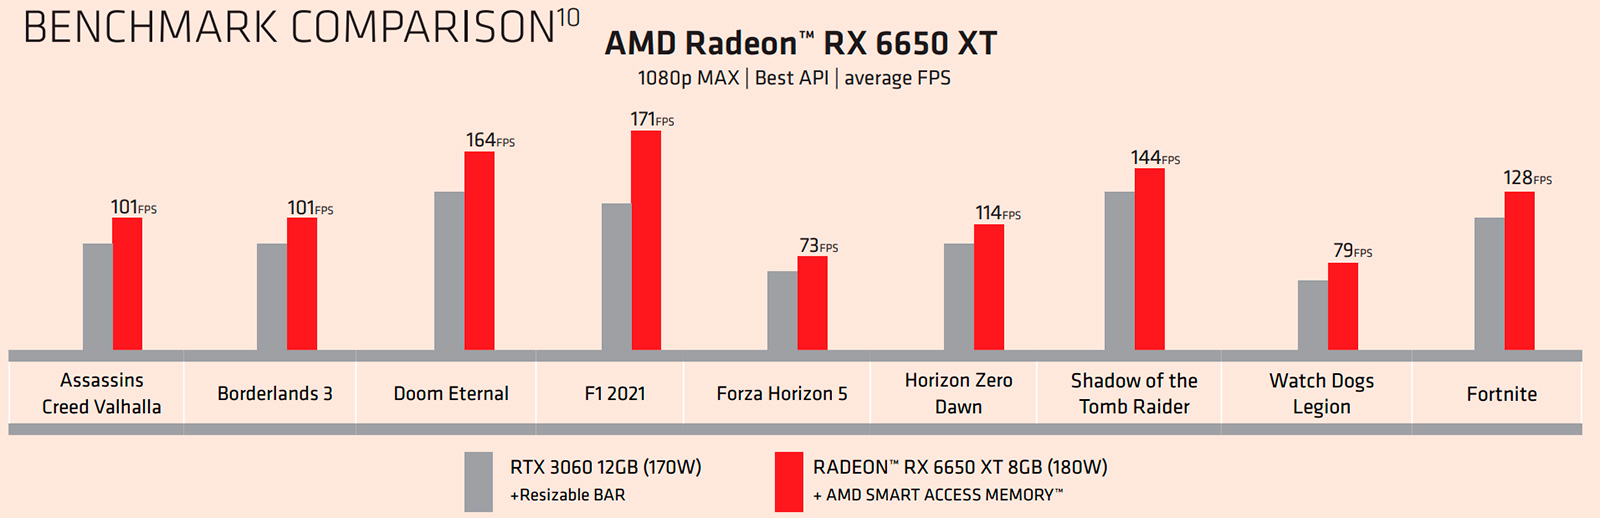 Видеокарты Radeon RX 6950 XT, 6750 XT и 6650 XT получили официальный статус